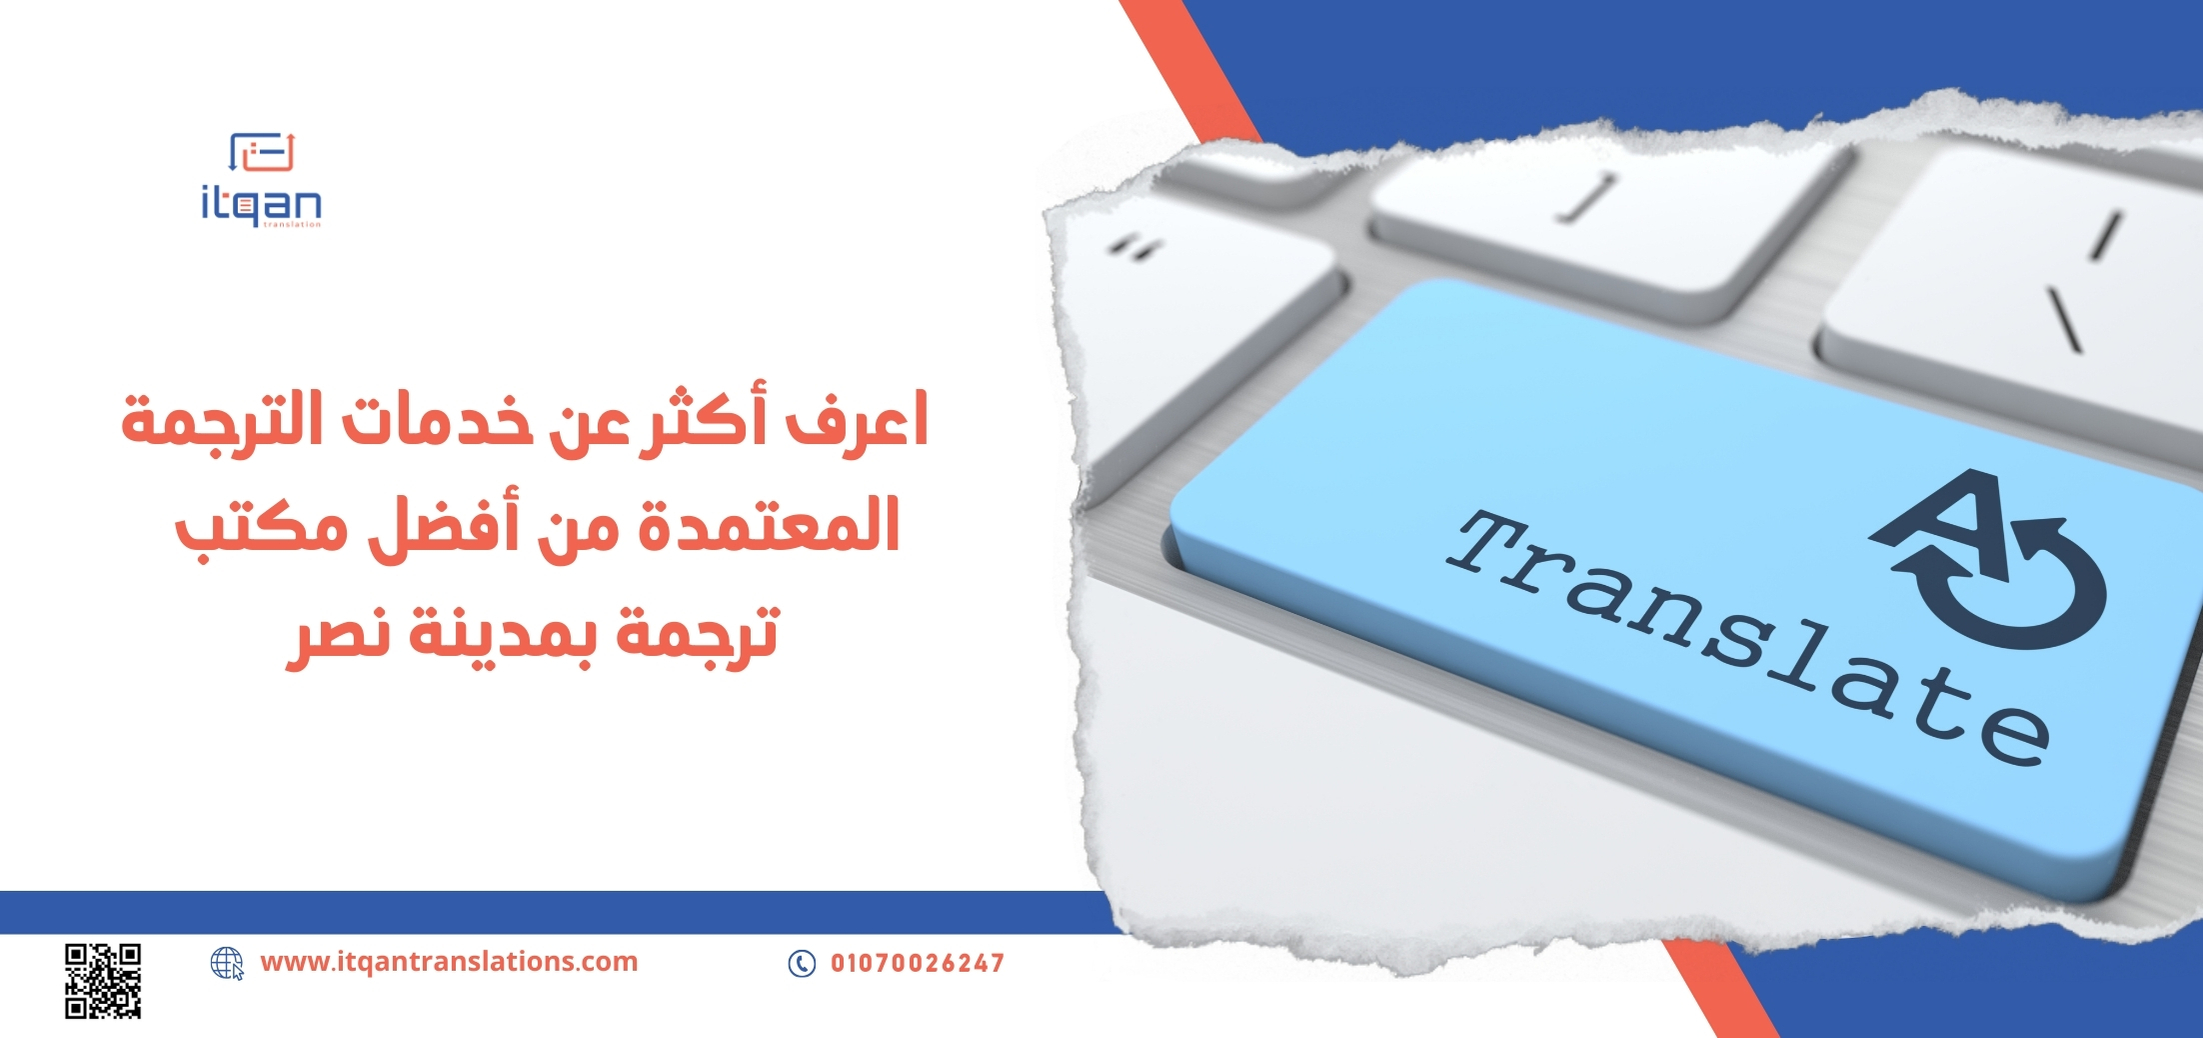 اعرف أكثر عن خدمات الترجمة المعتمدة من أفضل مكتب ترجمة بمدينة نصر